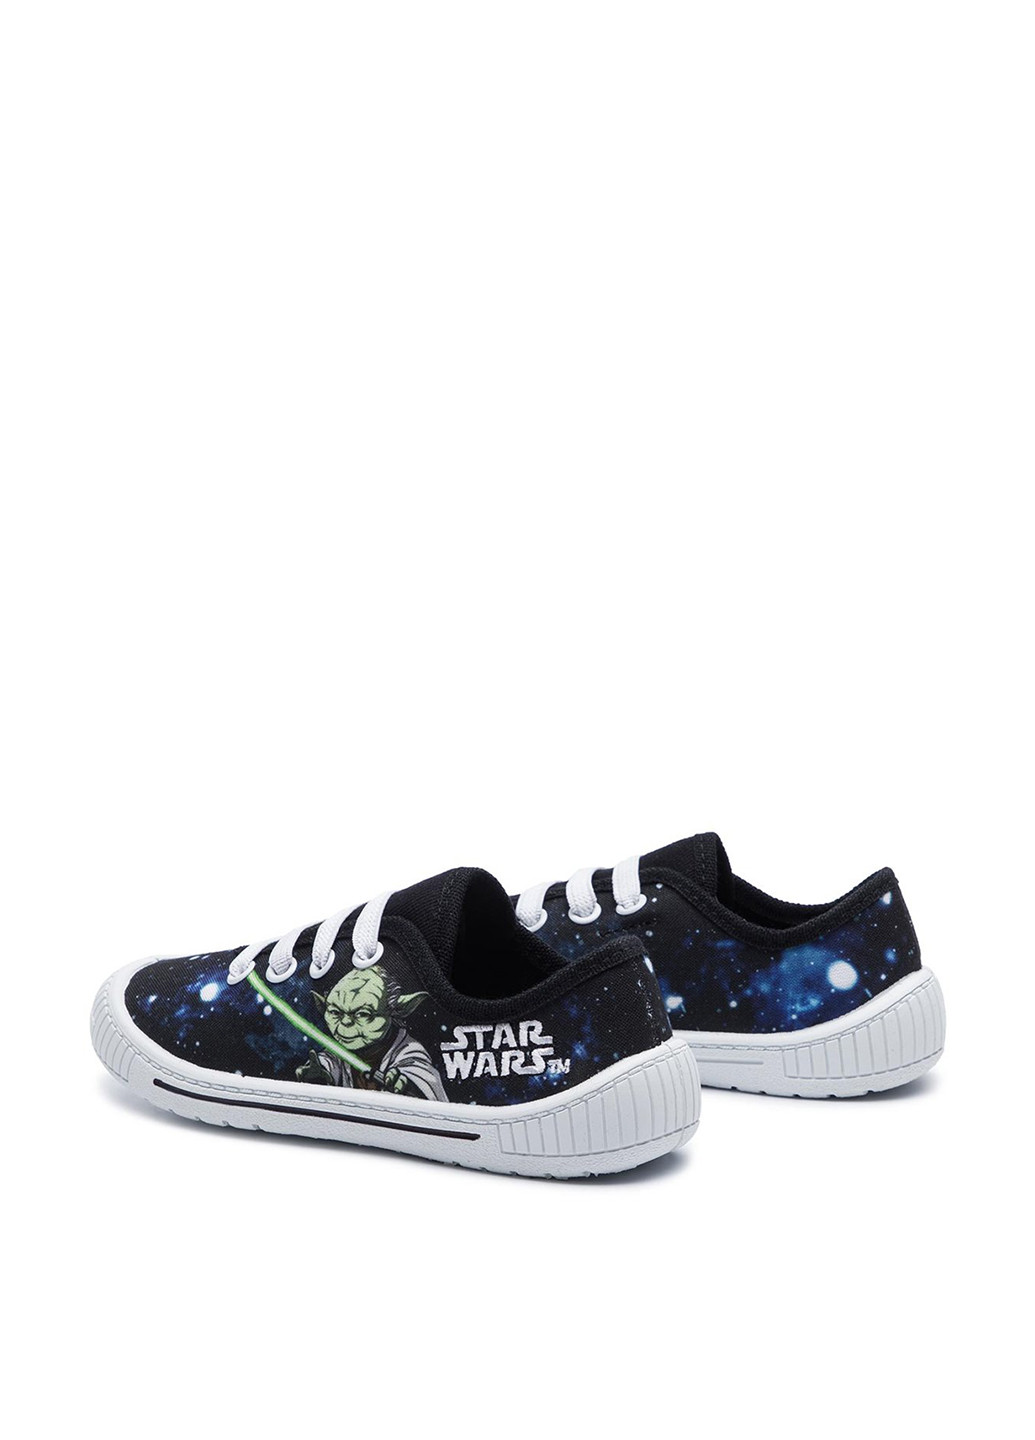 Цветные капці star wars Star Wars MB19-71LC